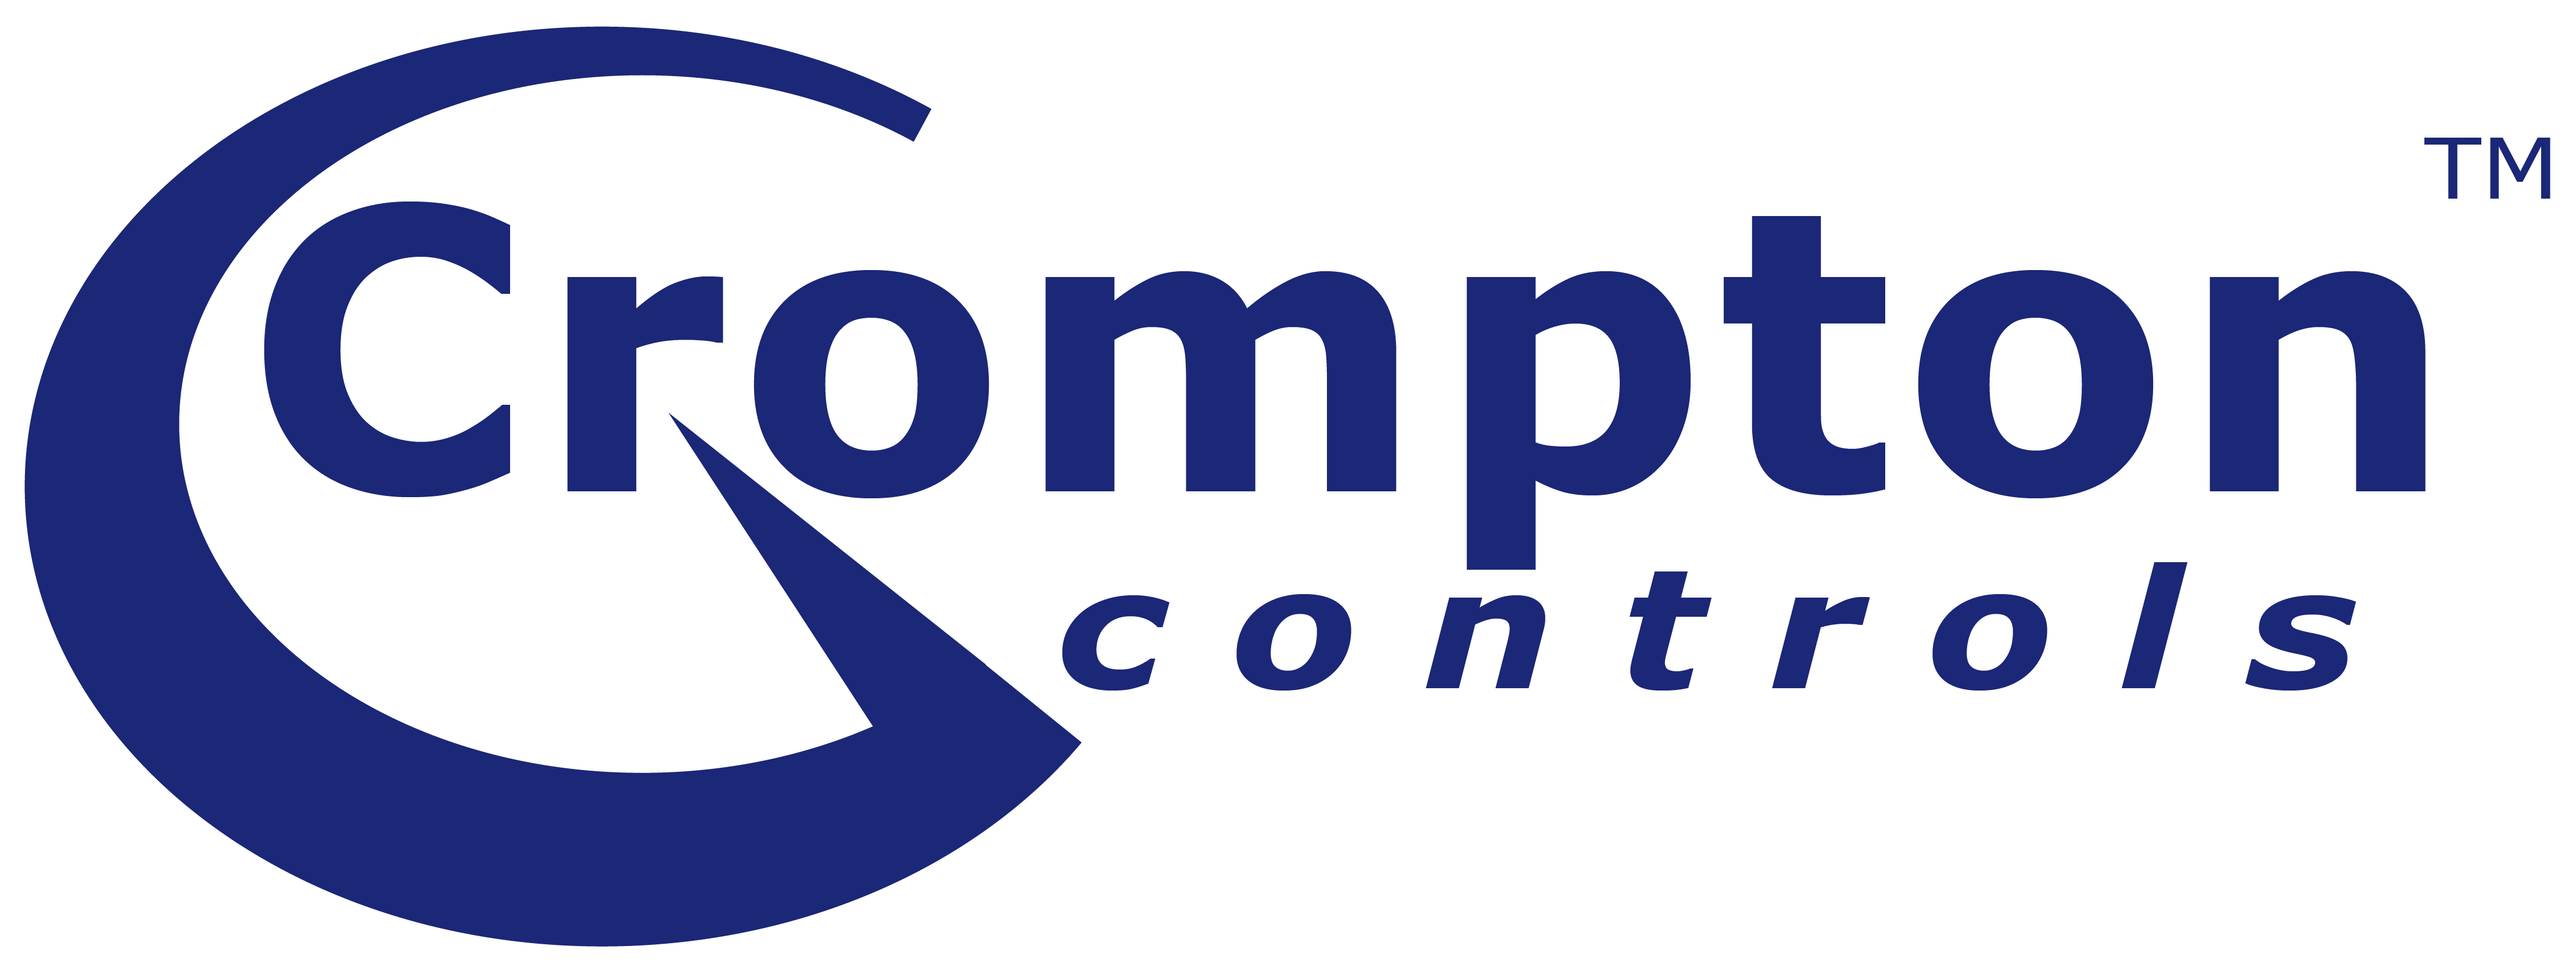 Crompton Controls Trade Mark